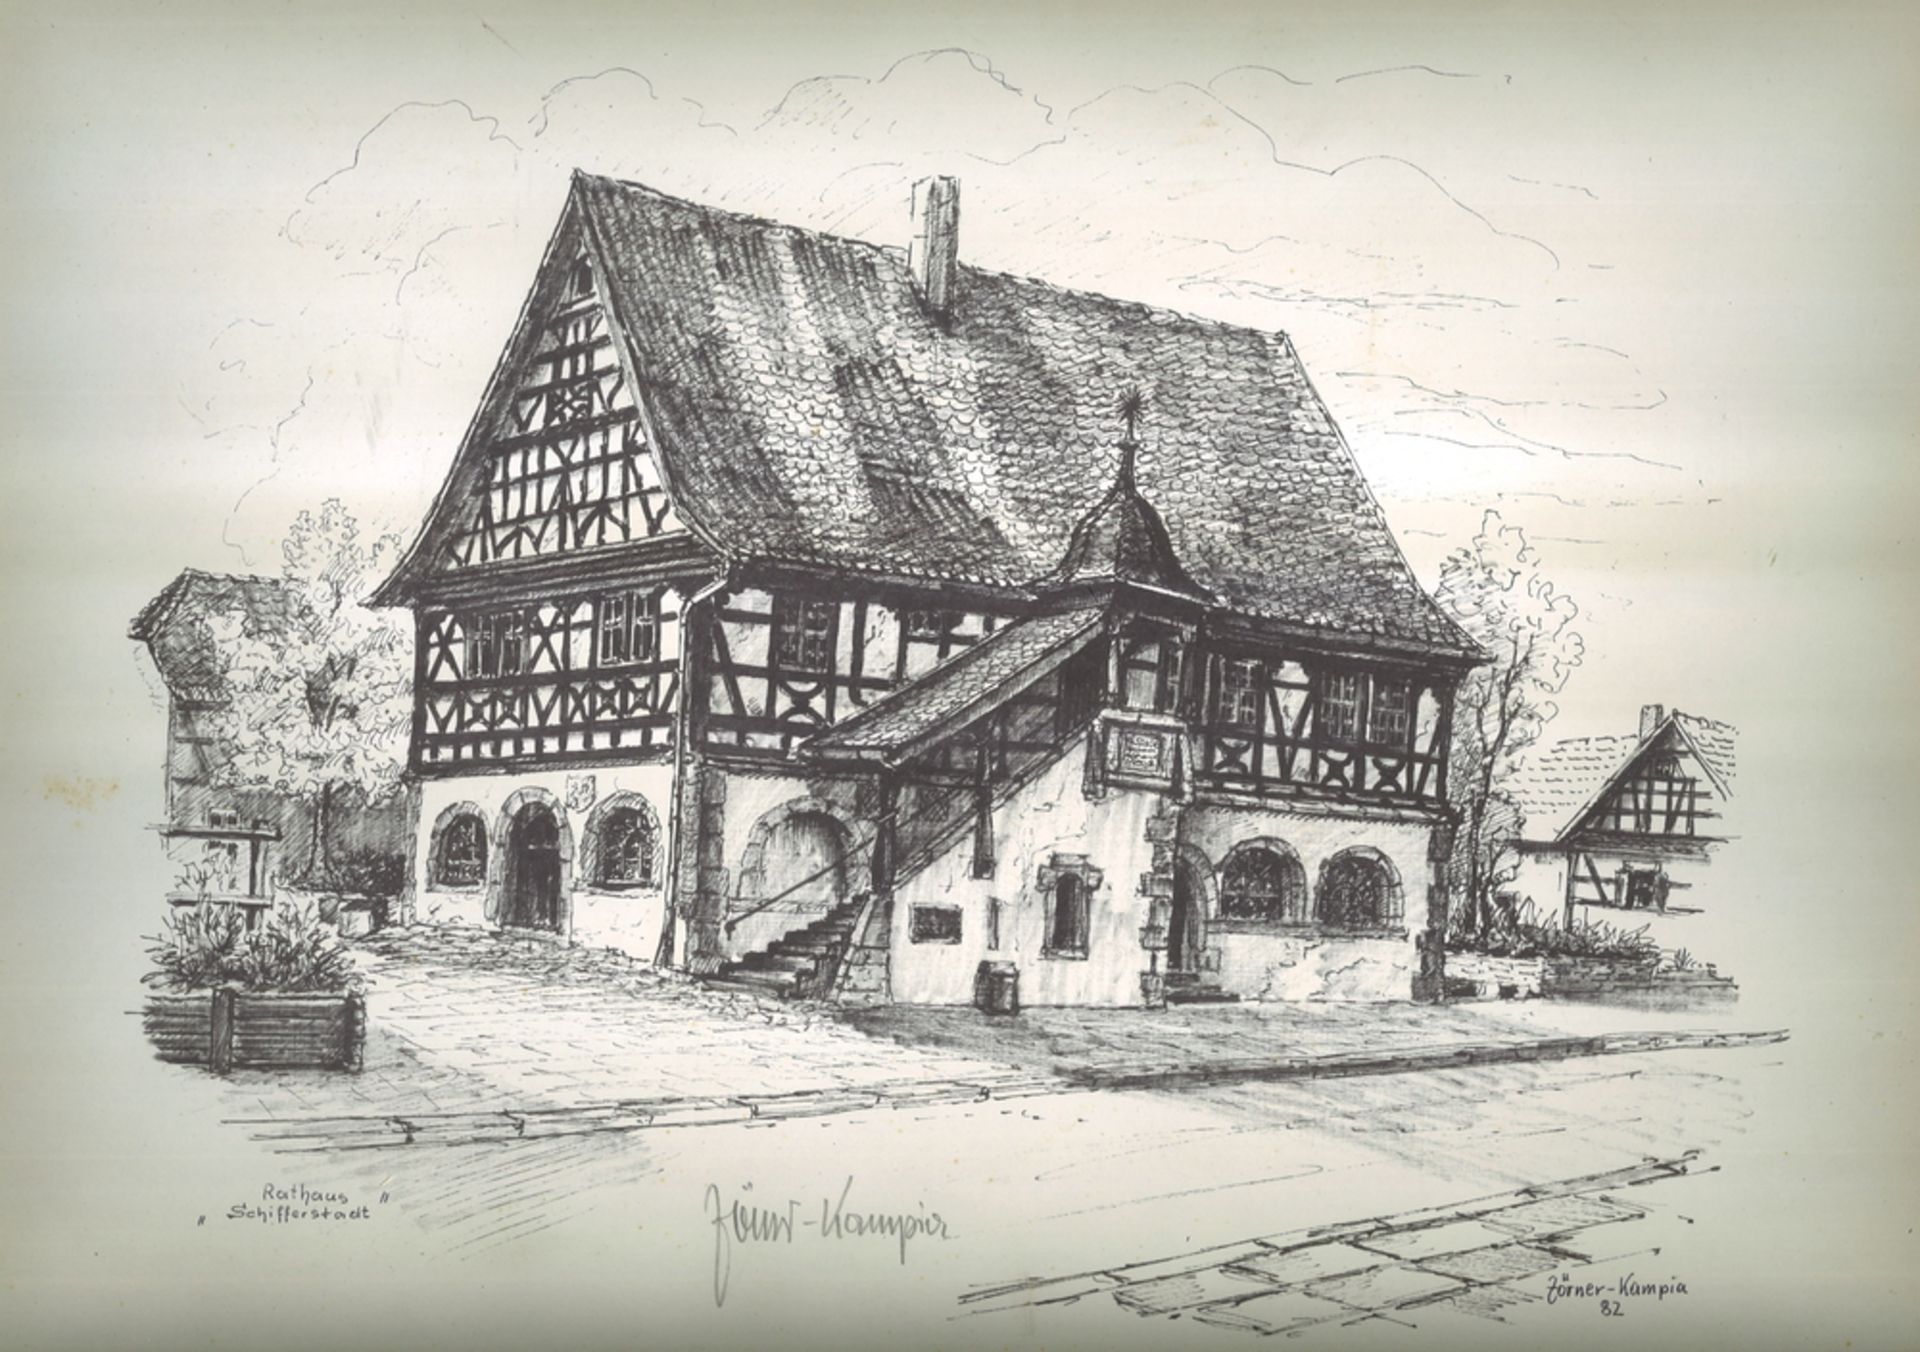 Josef Zörner-Kampia (1925- ) Bleistiftzeichnung (wohl Druck) "Rathaus Schifferstadt" handsigniert.